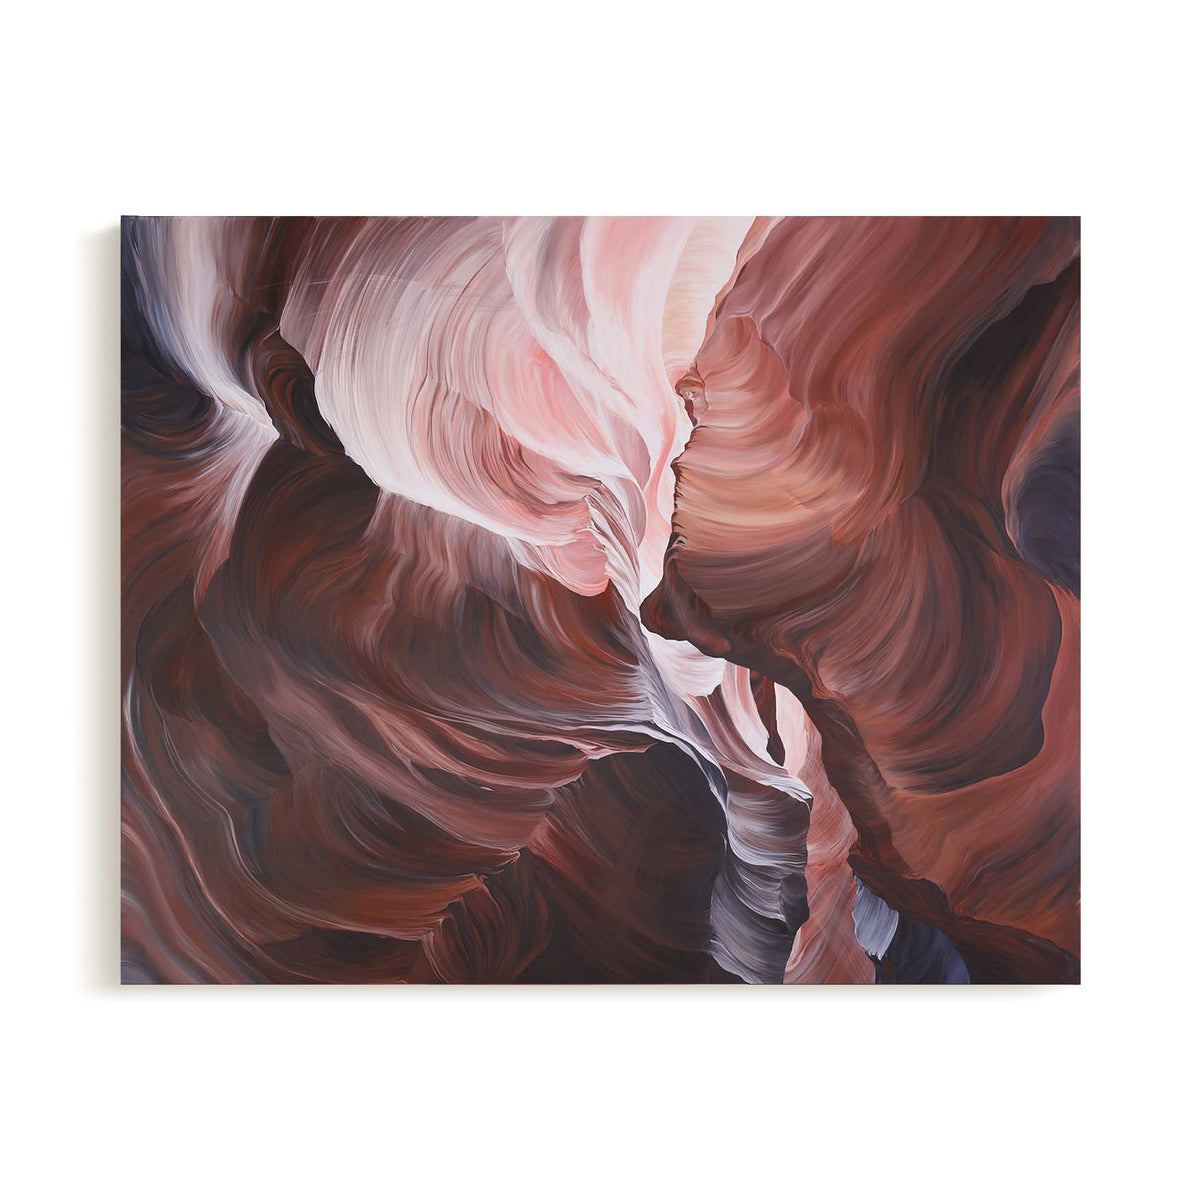 Elemental - Canvas Print by Emily Scott | Art Bloom Canvas Art